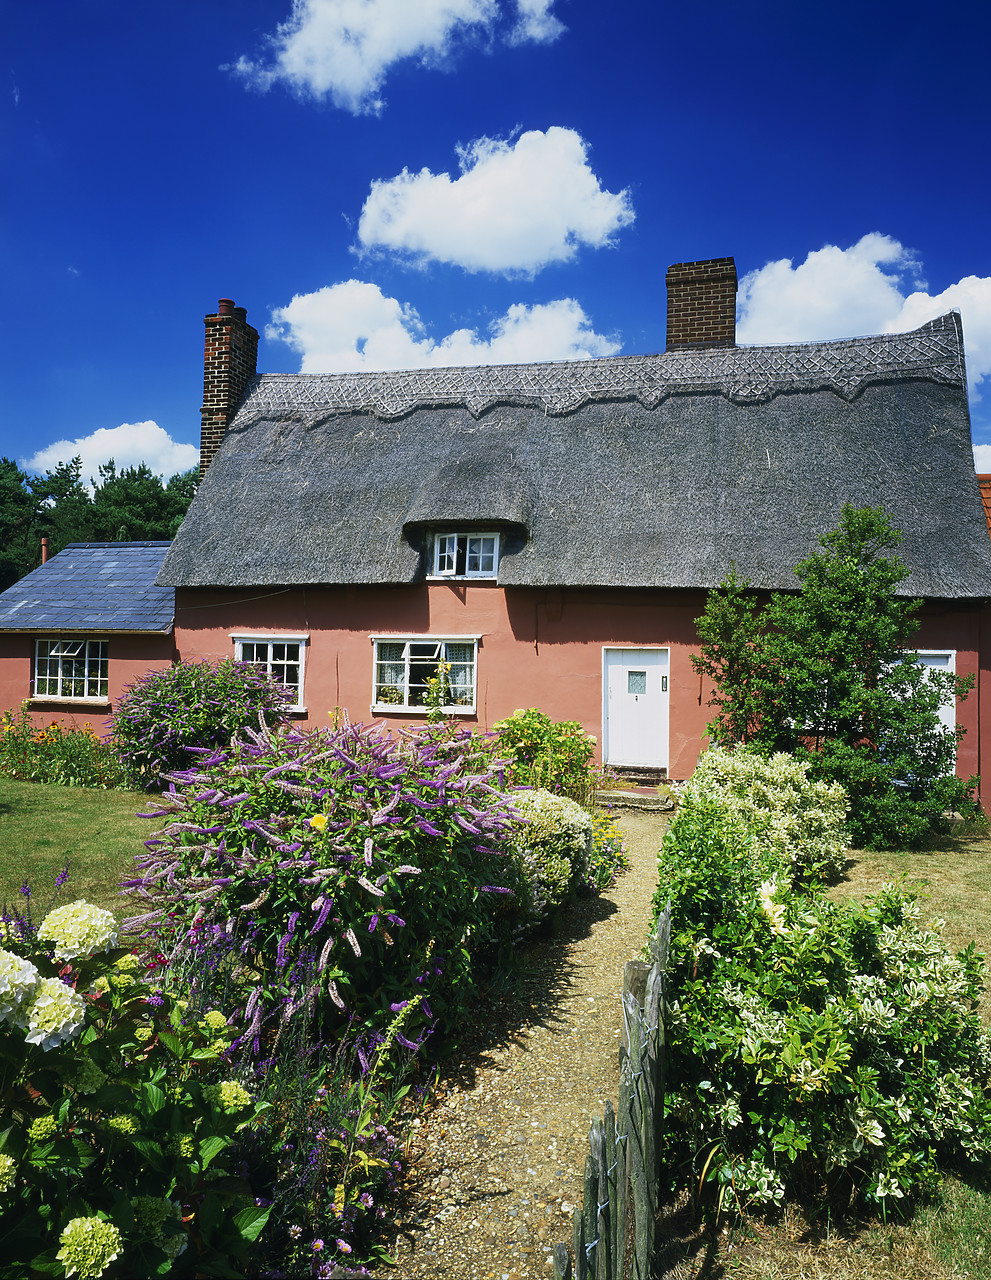 #040161-6 - Thatched Cottage & Garden, Essex, England